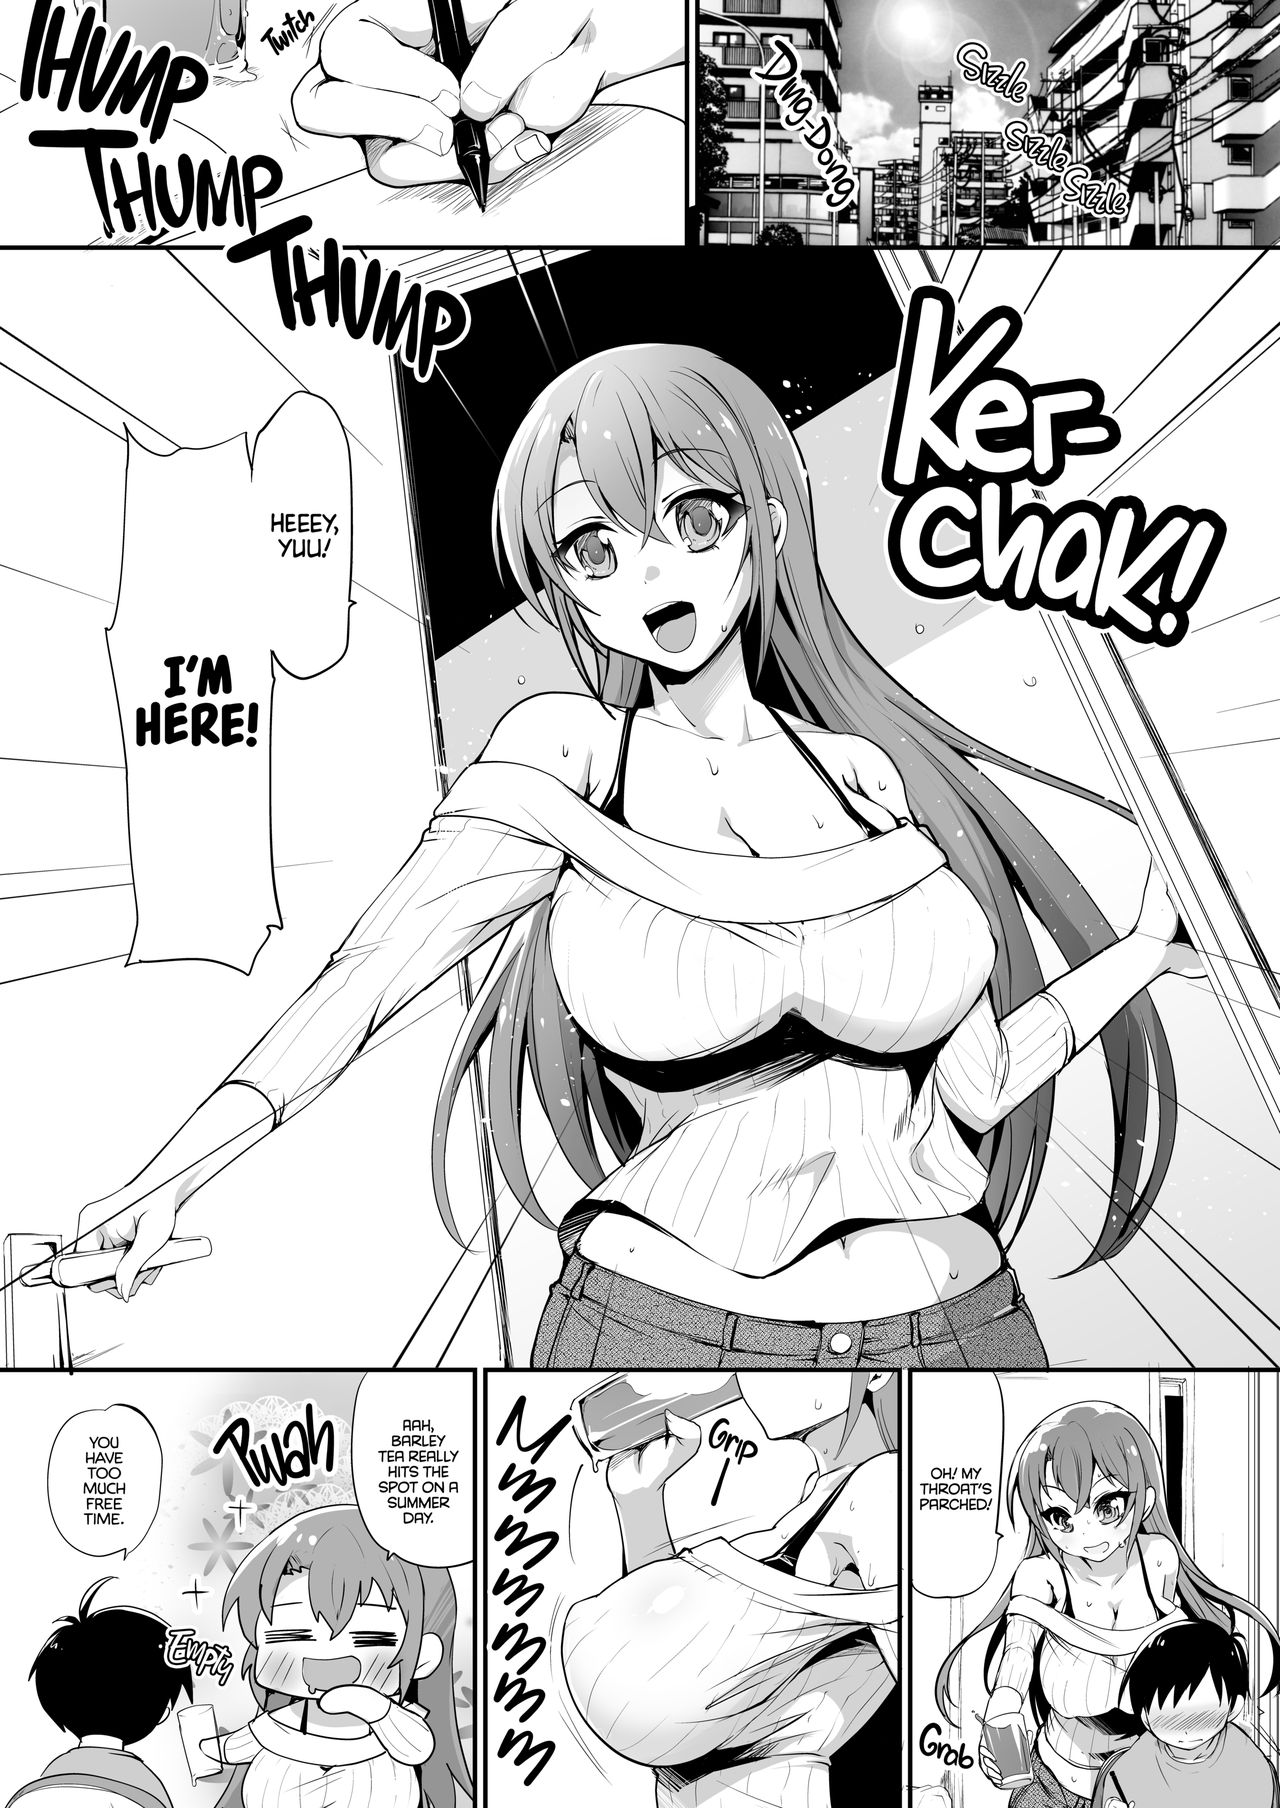 1280px x 1808px - Do you like Big Sis' Big Tits?- Kouki Kuu - Porn Cartoon Comics